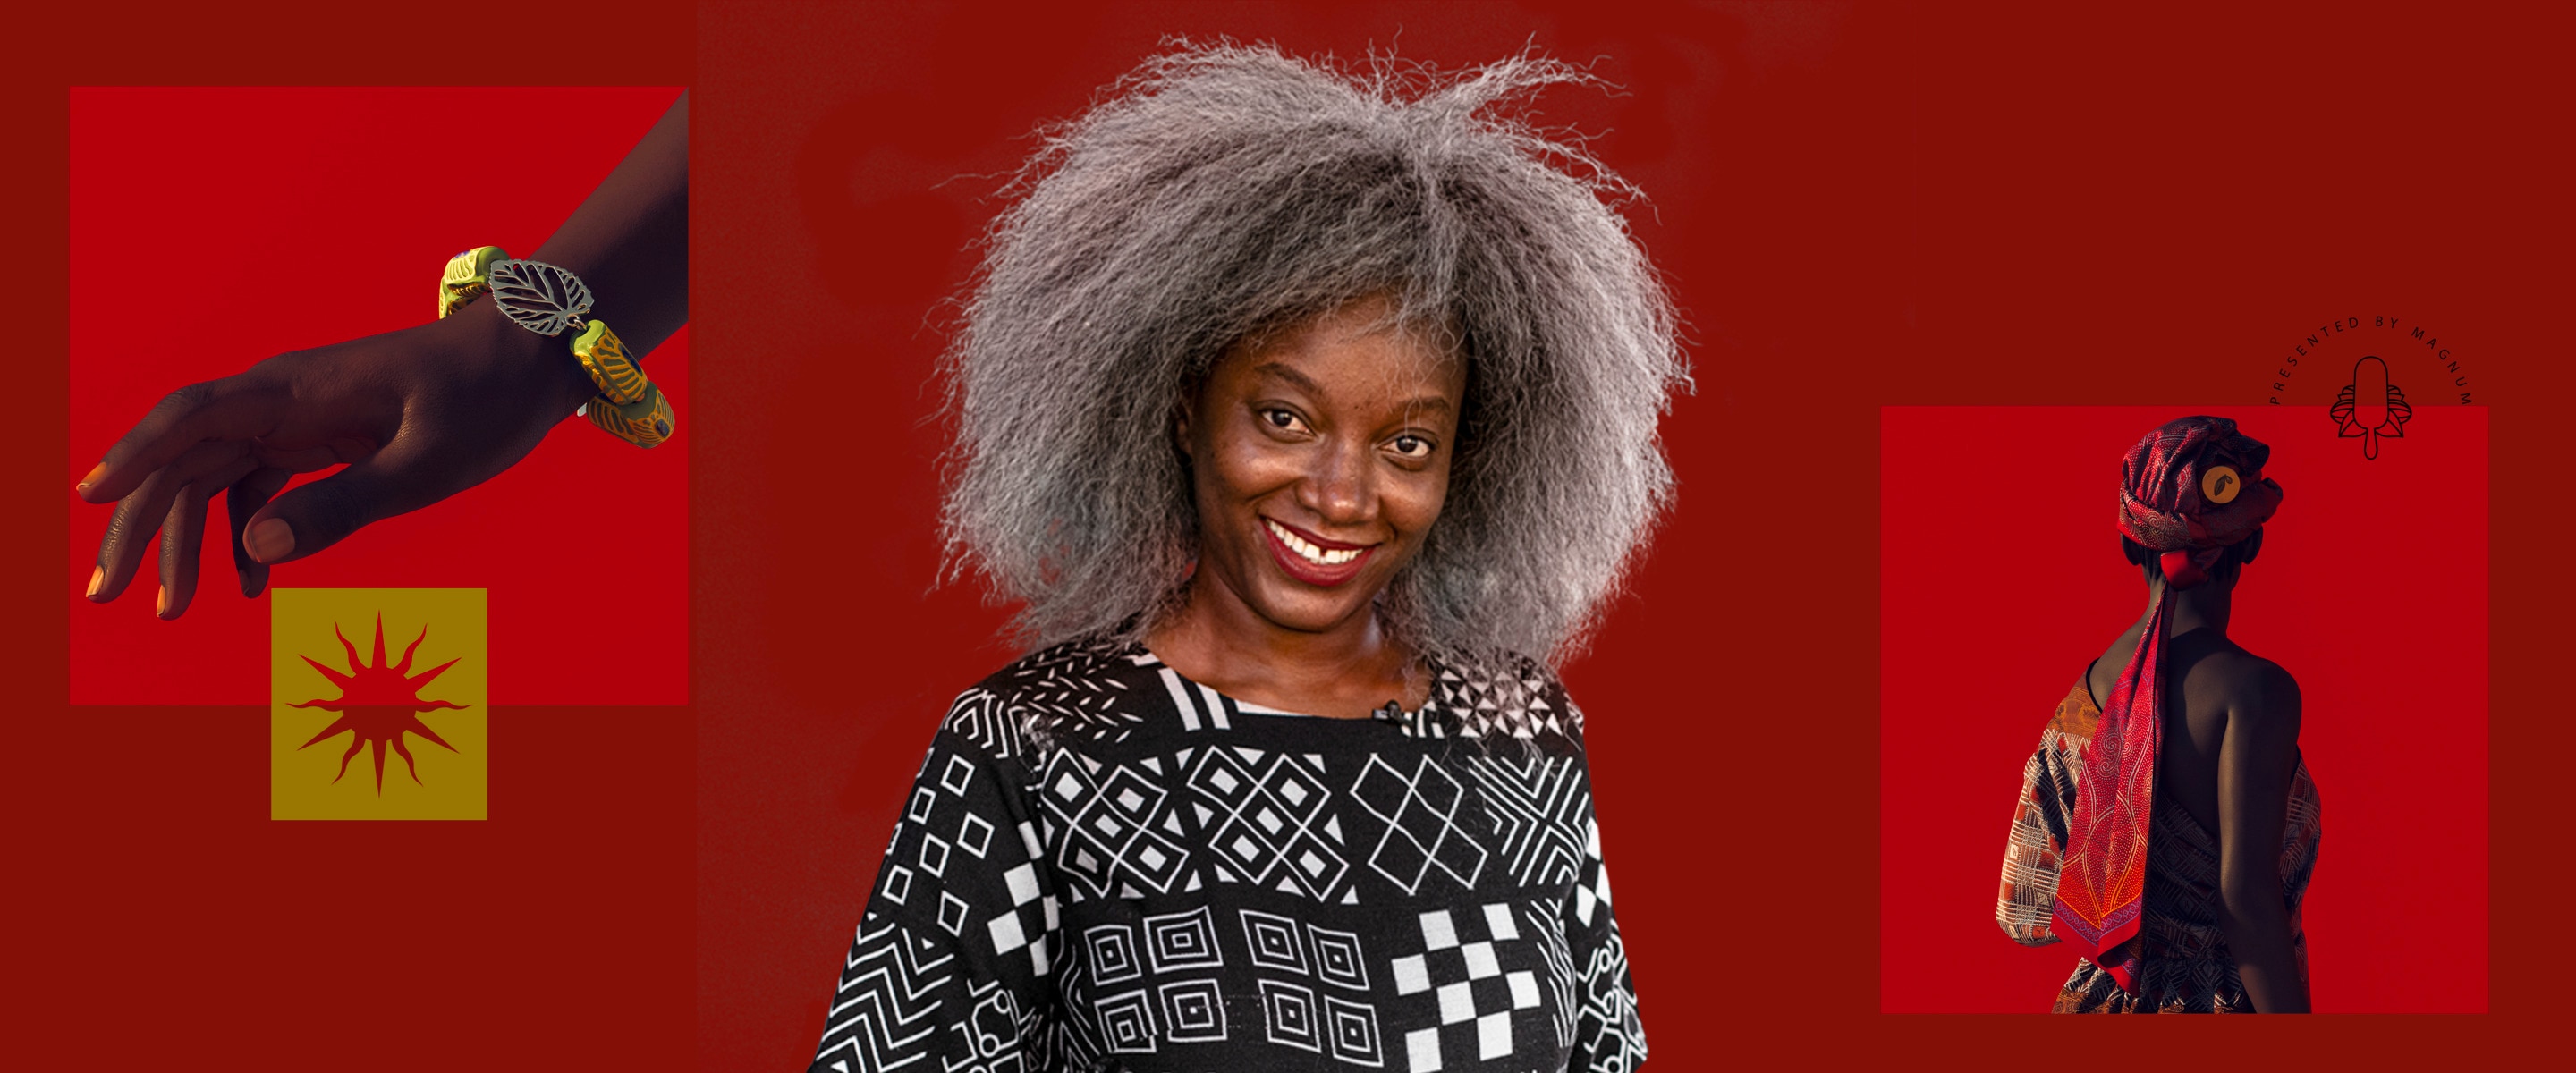 Fotomontage mit der ivorischen Modedesignerin Rebecca Zoro und Teilen ihrer AWA by Magnum Mode-Kollektion auf einem roten Hintergrundro and her AWA by Magnum fashion items on a red background